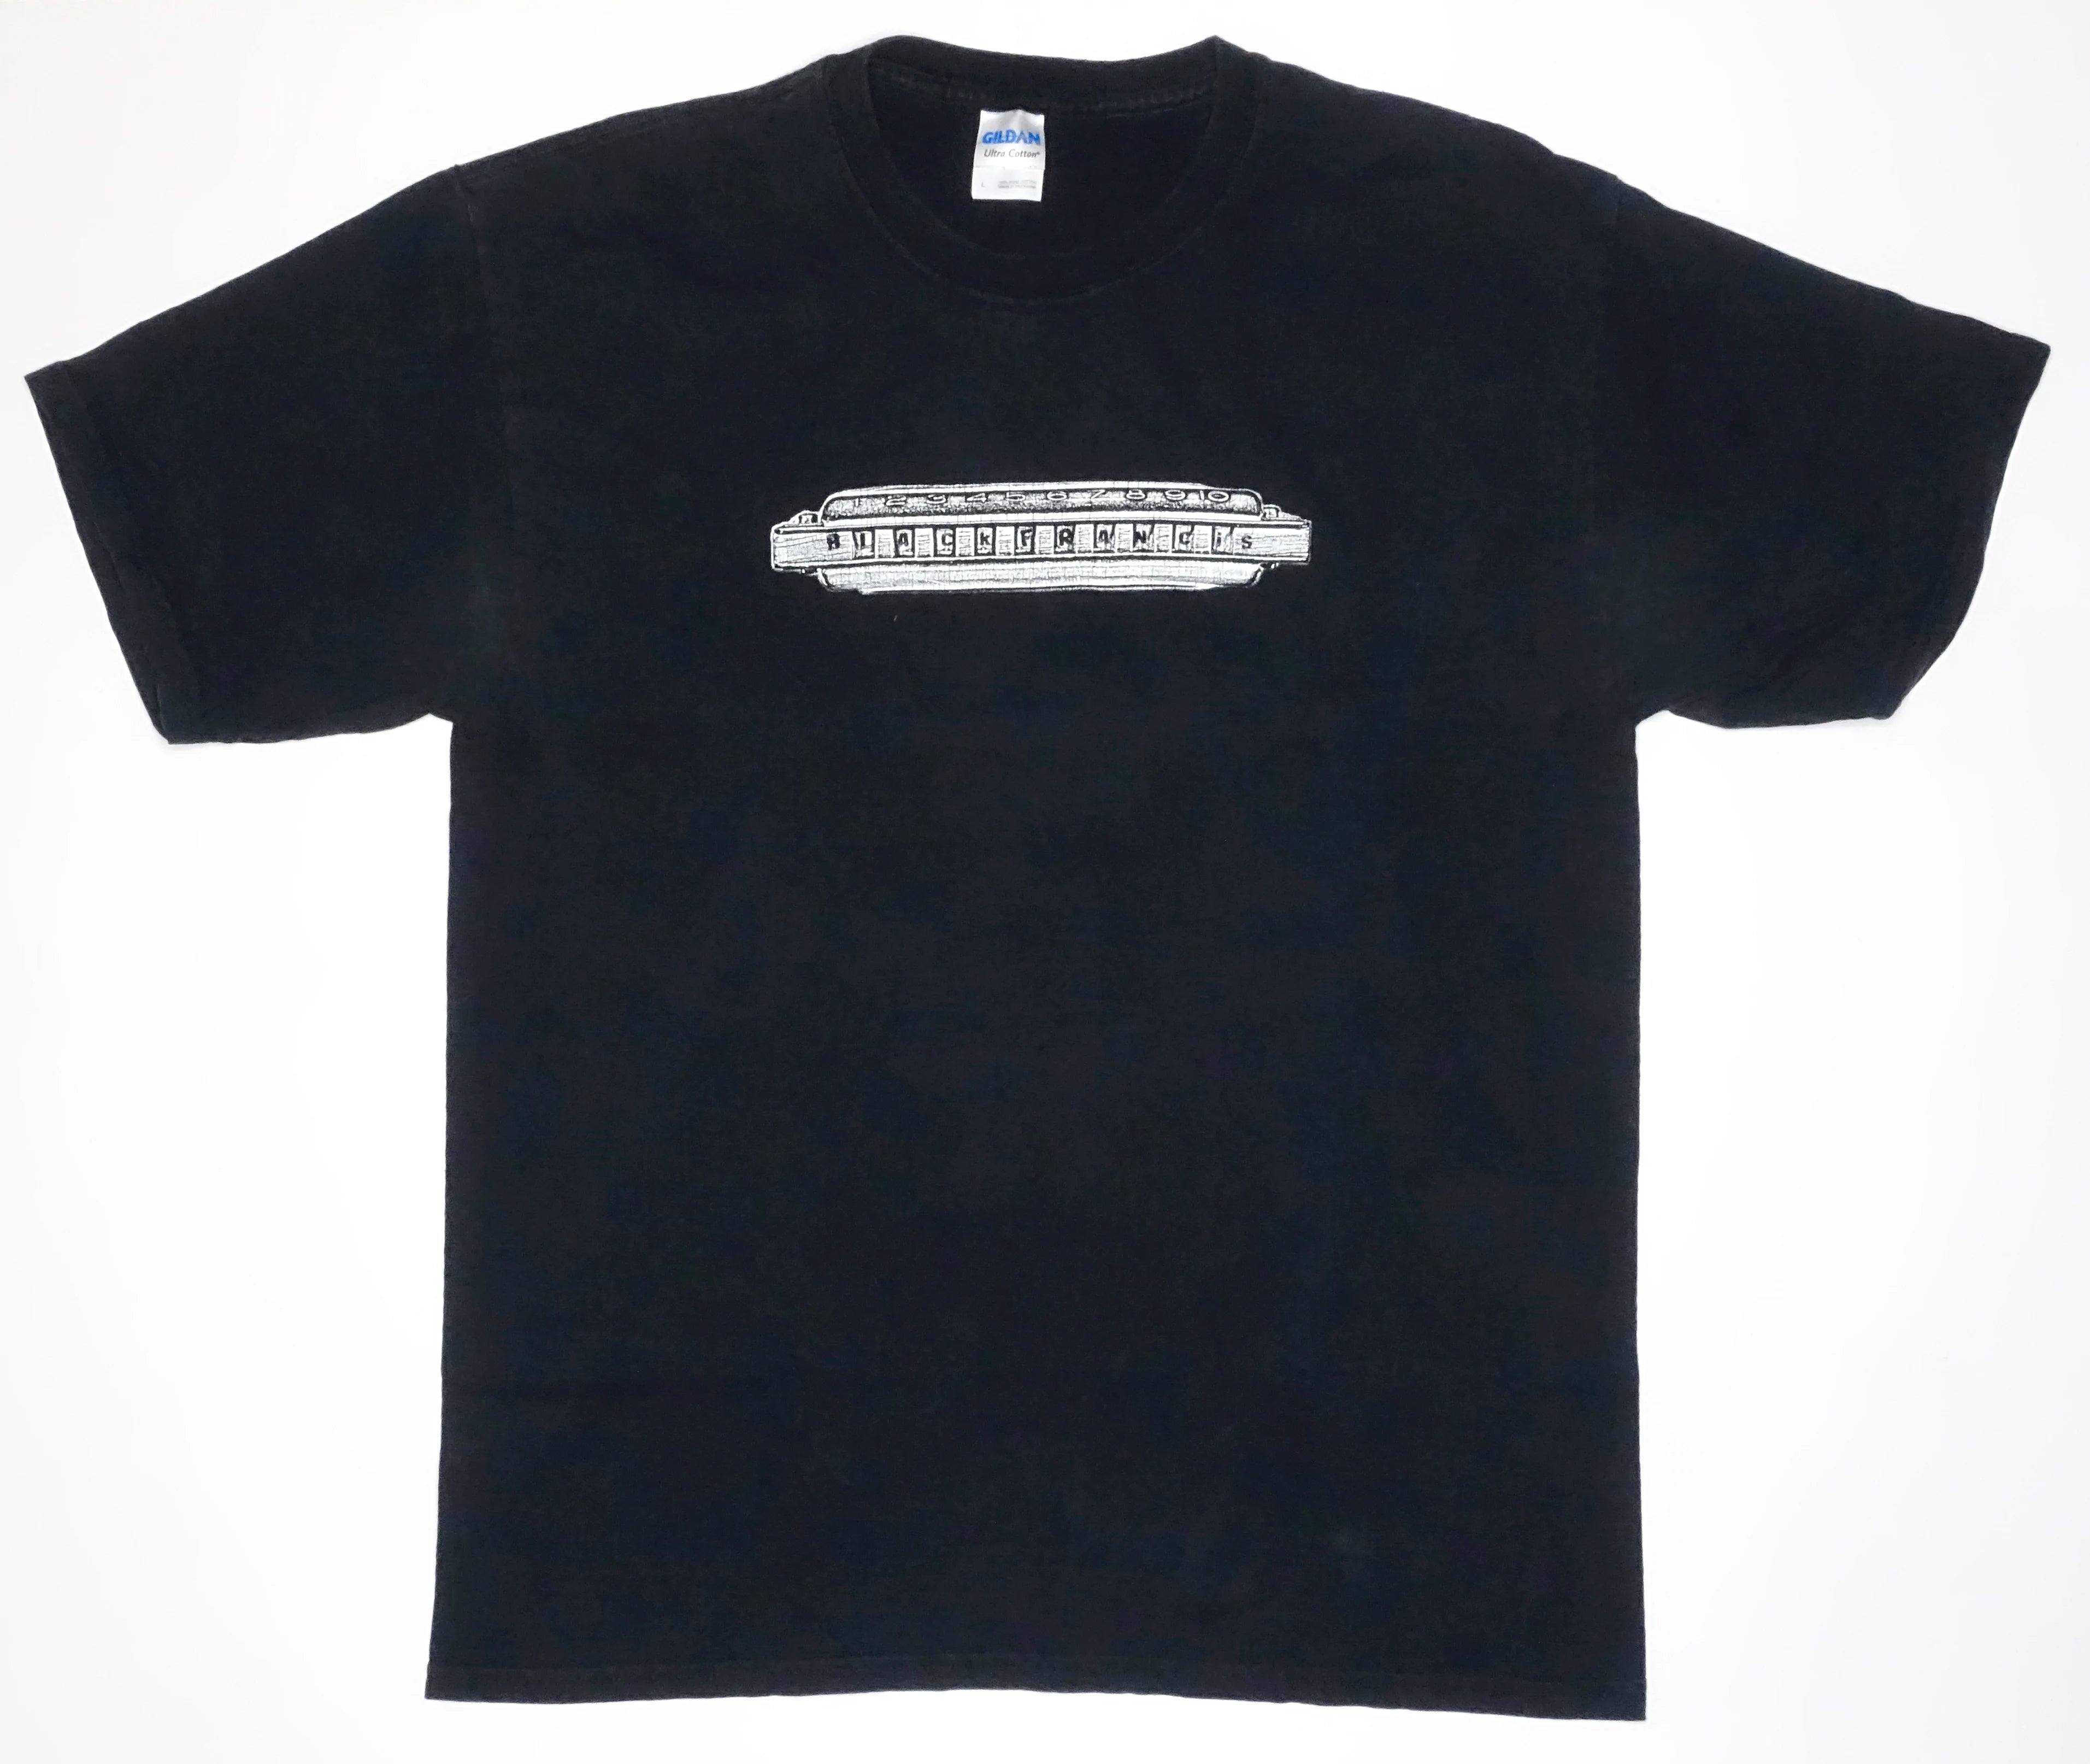 Frank Black - Black Francis Harmonica Tour Shirt Size Large